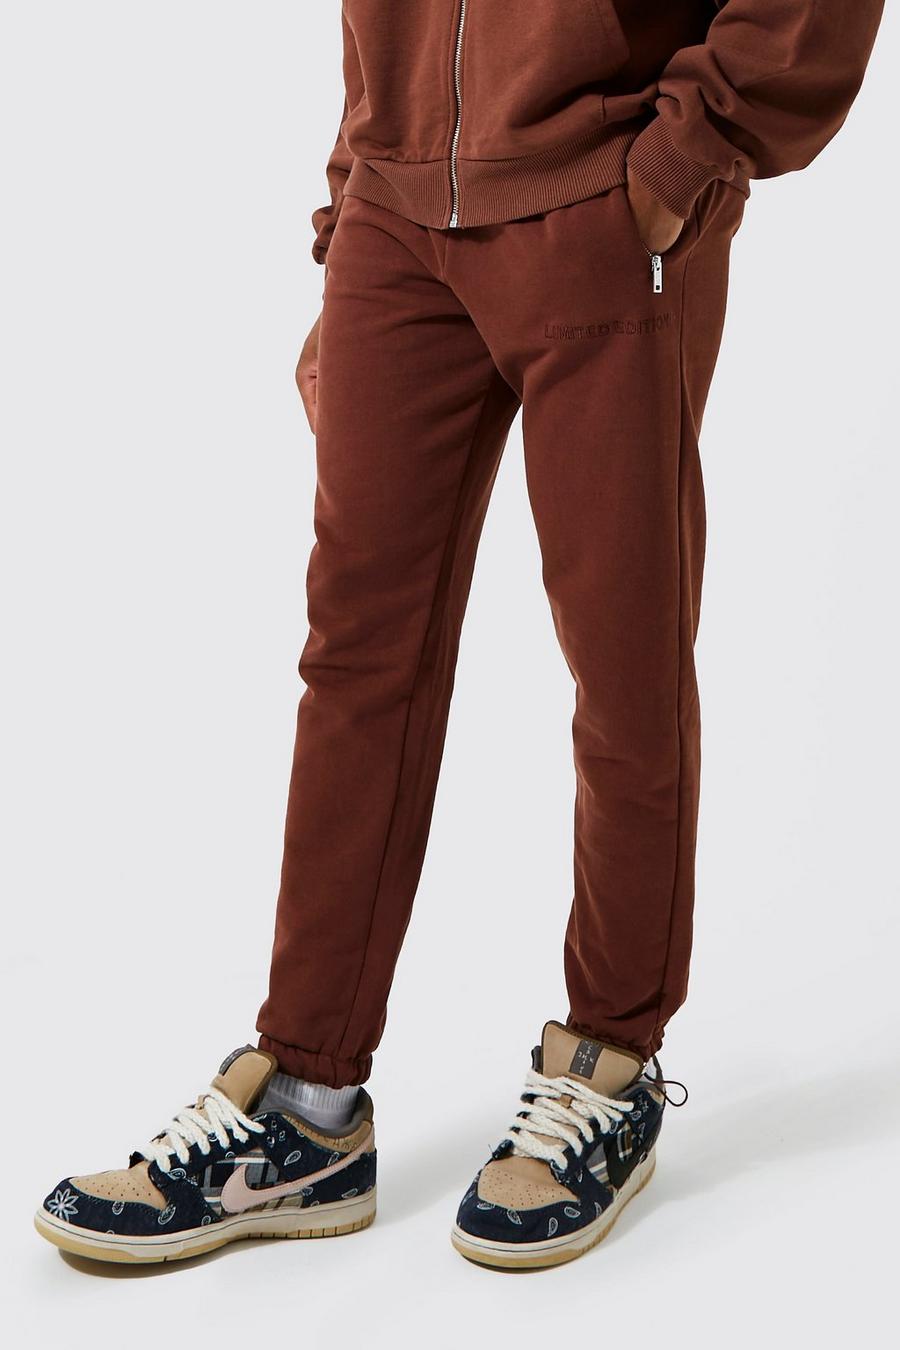 Pantalón deportivo ajustado de tela rizo gruesa, Chocolate marrone